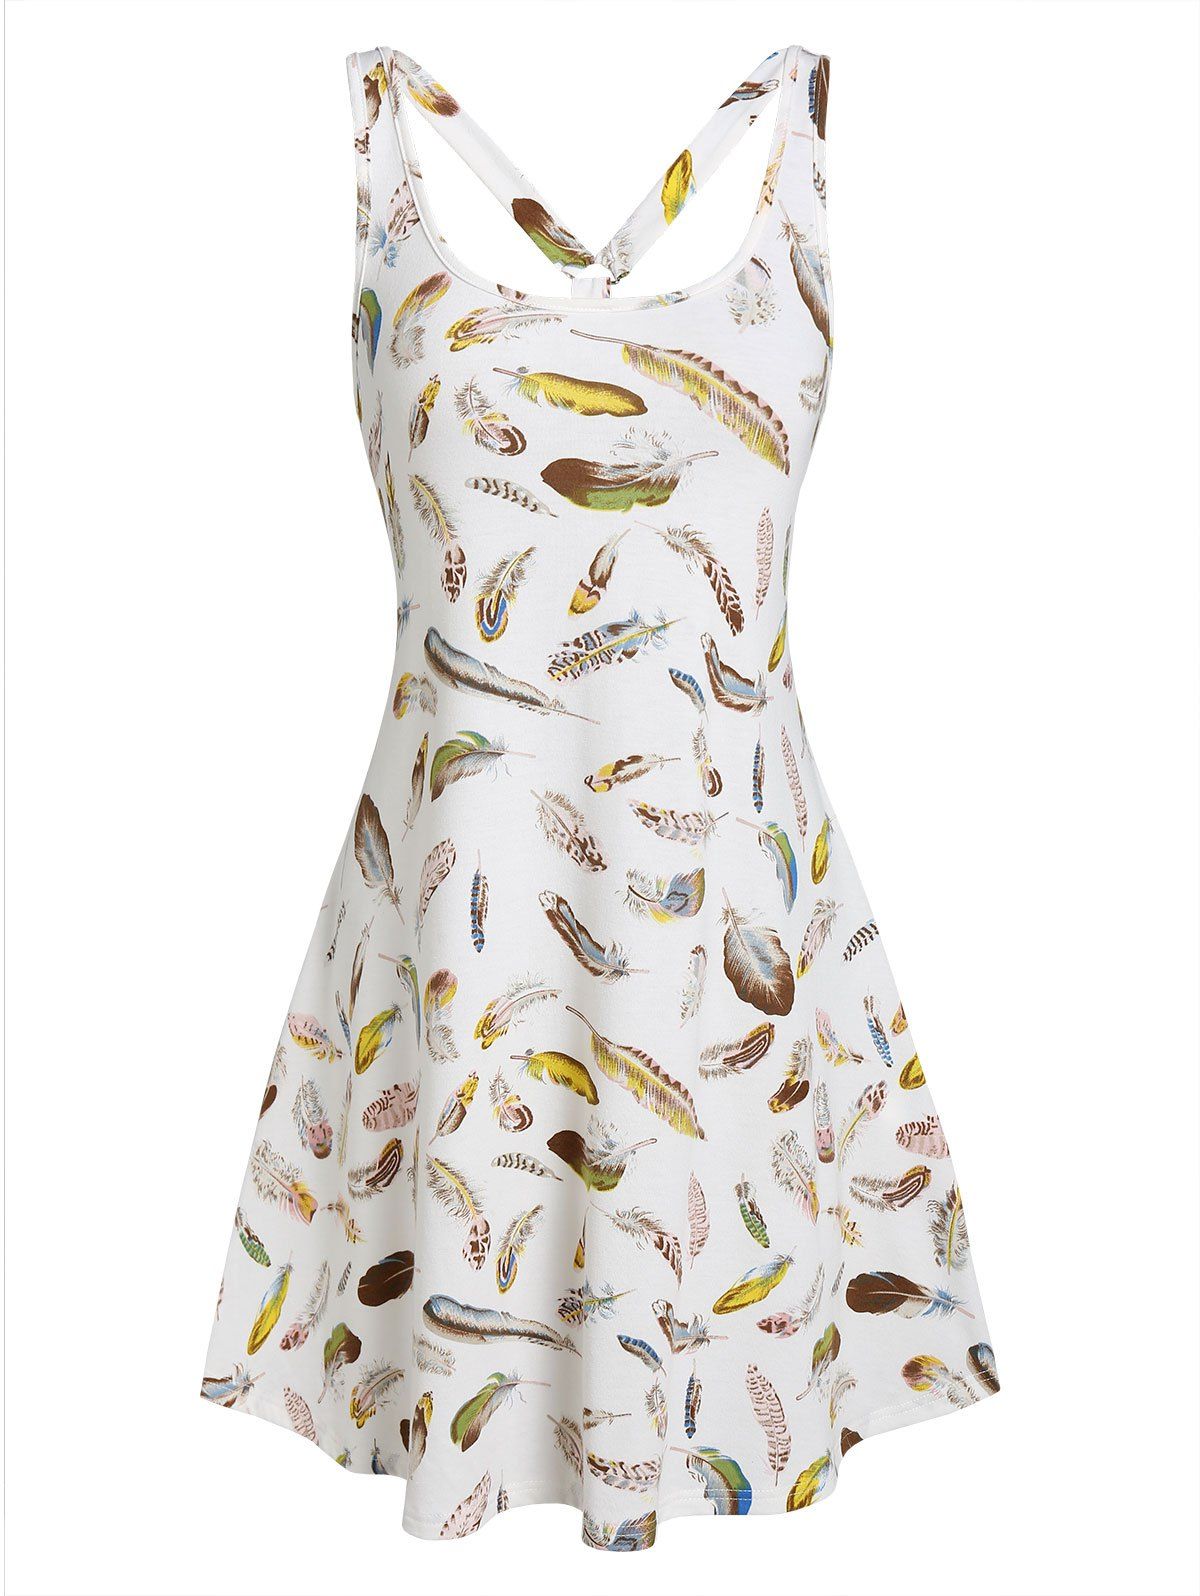 Sleeveless Feather Print Flare Dress - WHITE XXXL